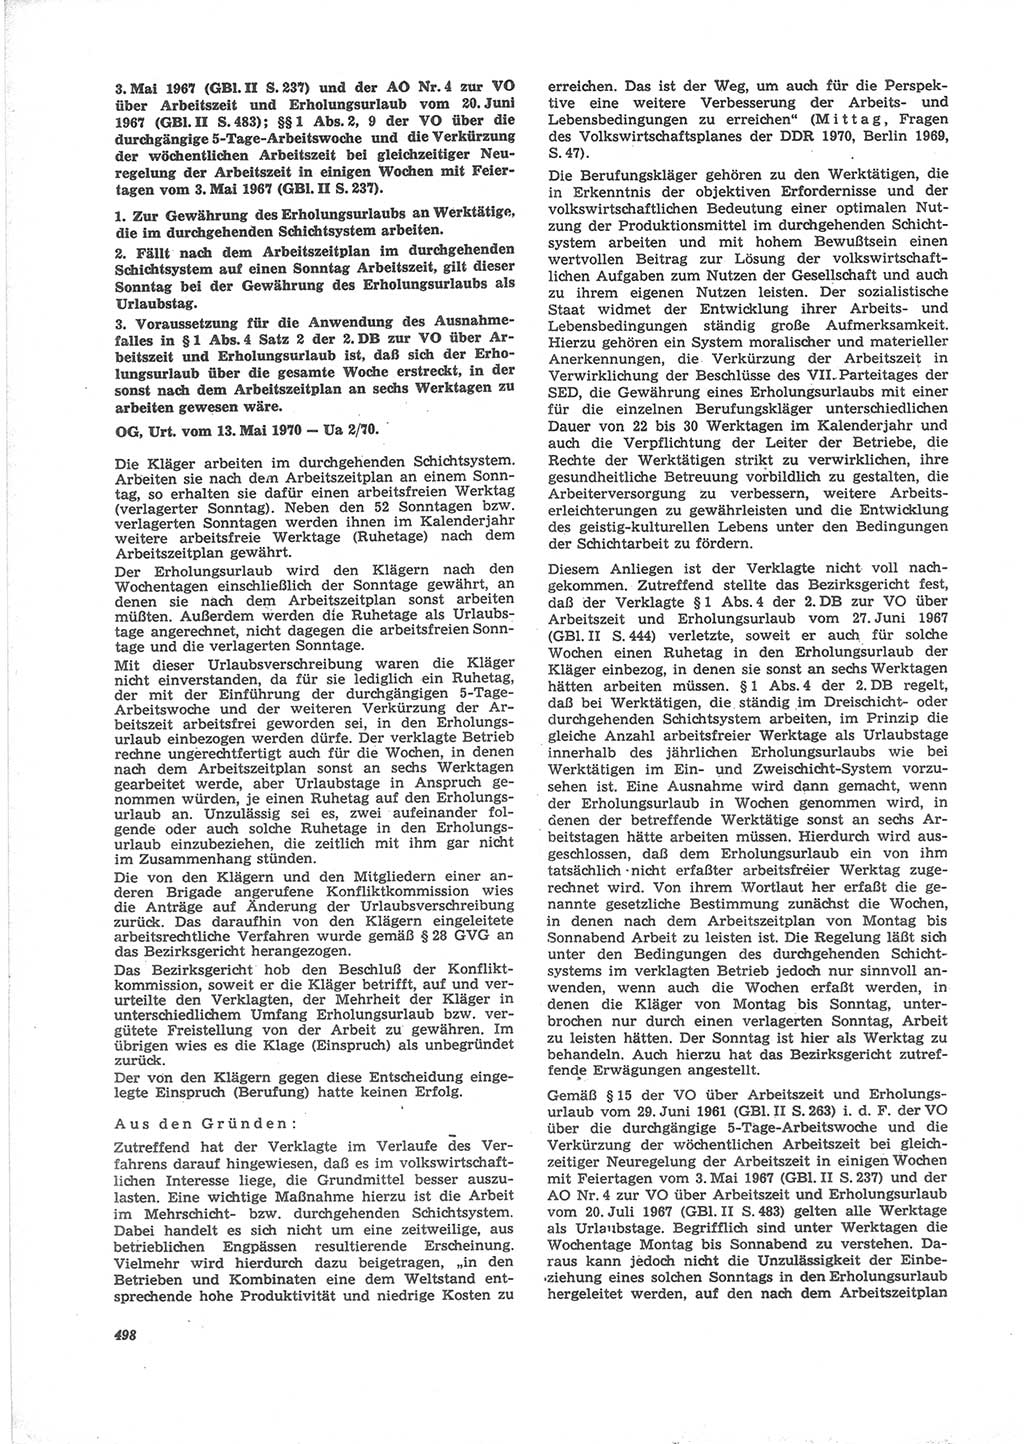 Neue Justiz (NJ), Zeitschrift für Recht und Rechtswissenschaft [Deutsche Demokratische Republik (DDR)], 24. Jahrgang 1970, Seite 498 (NJ DDR 1970, S. 498)